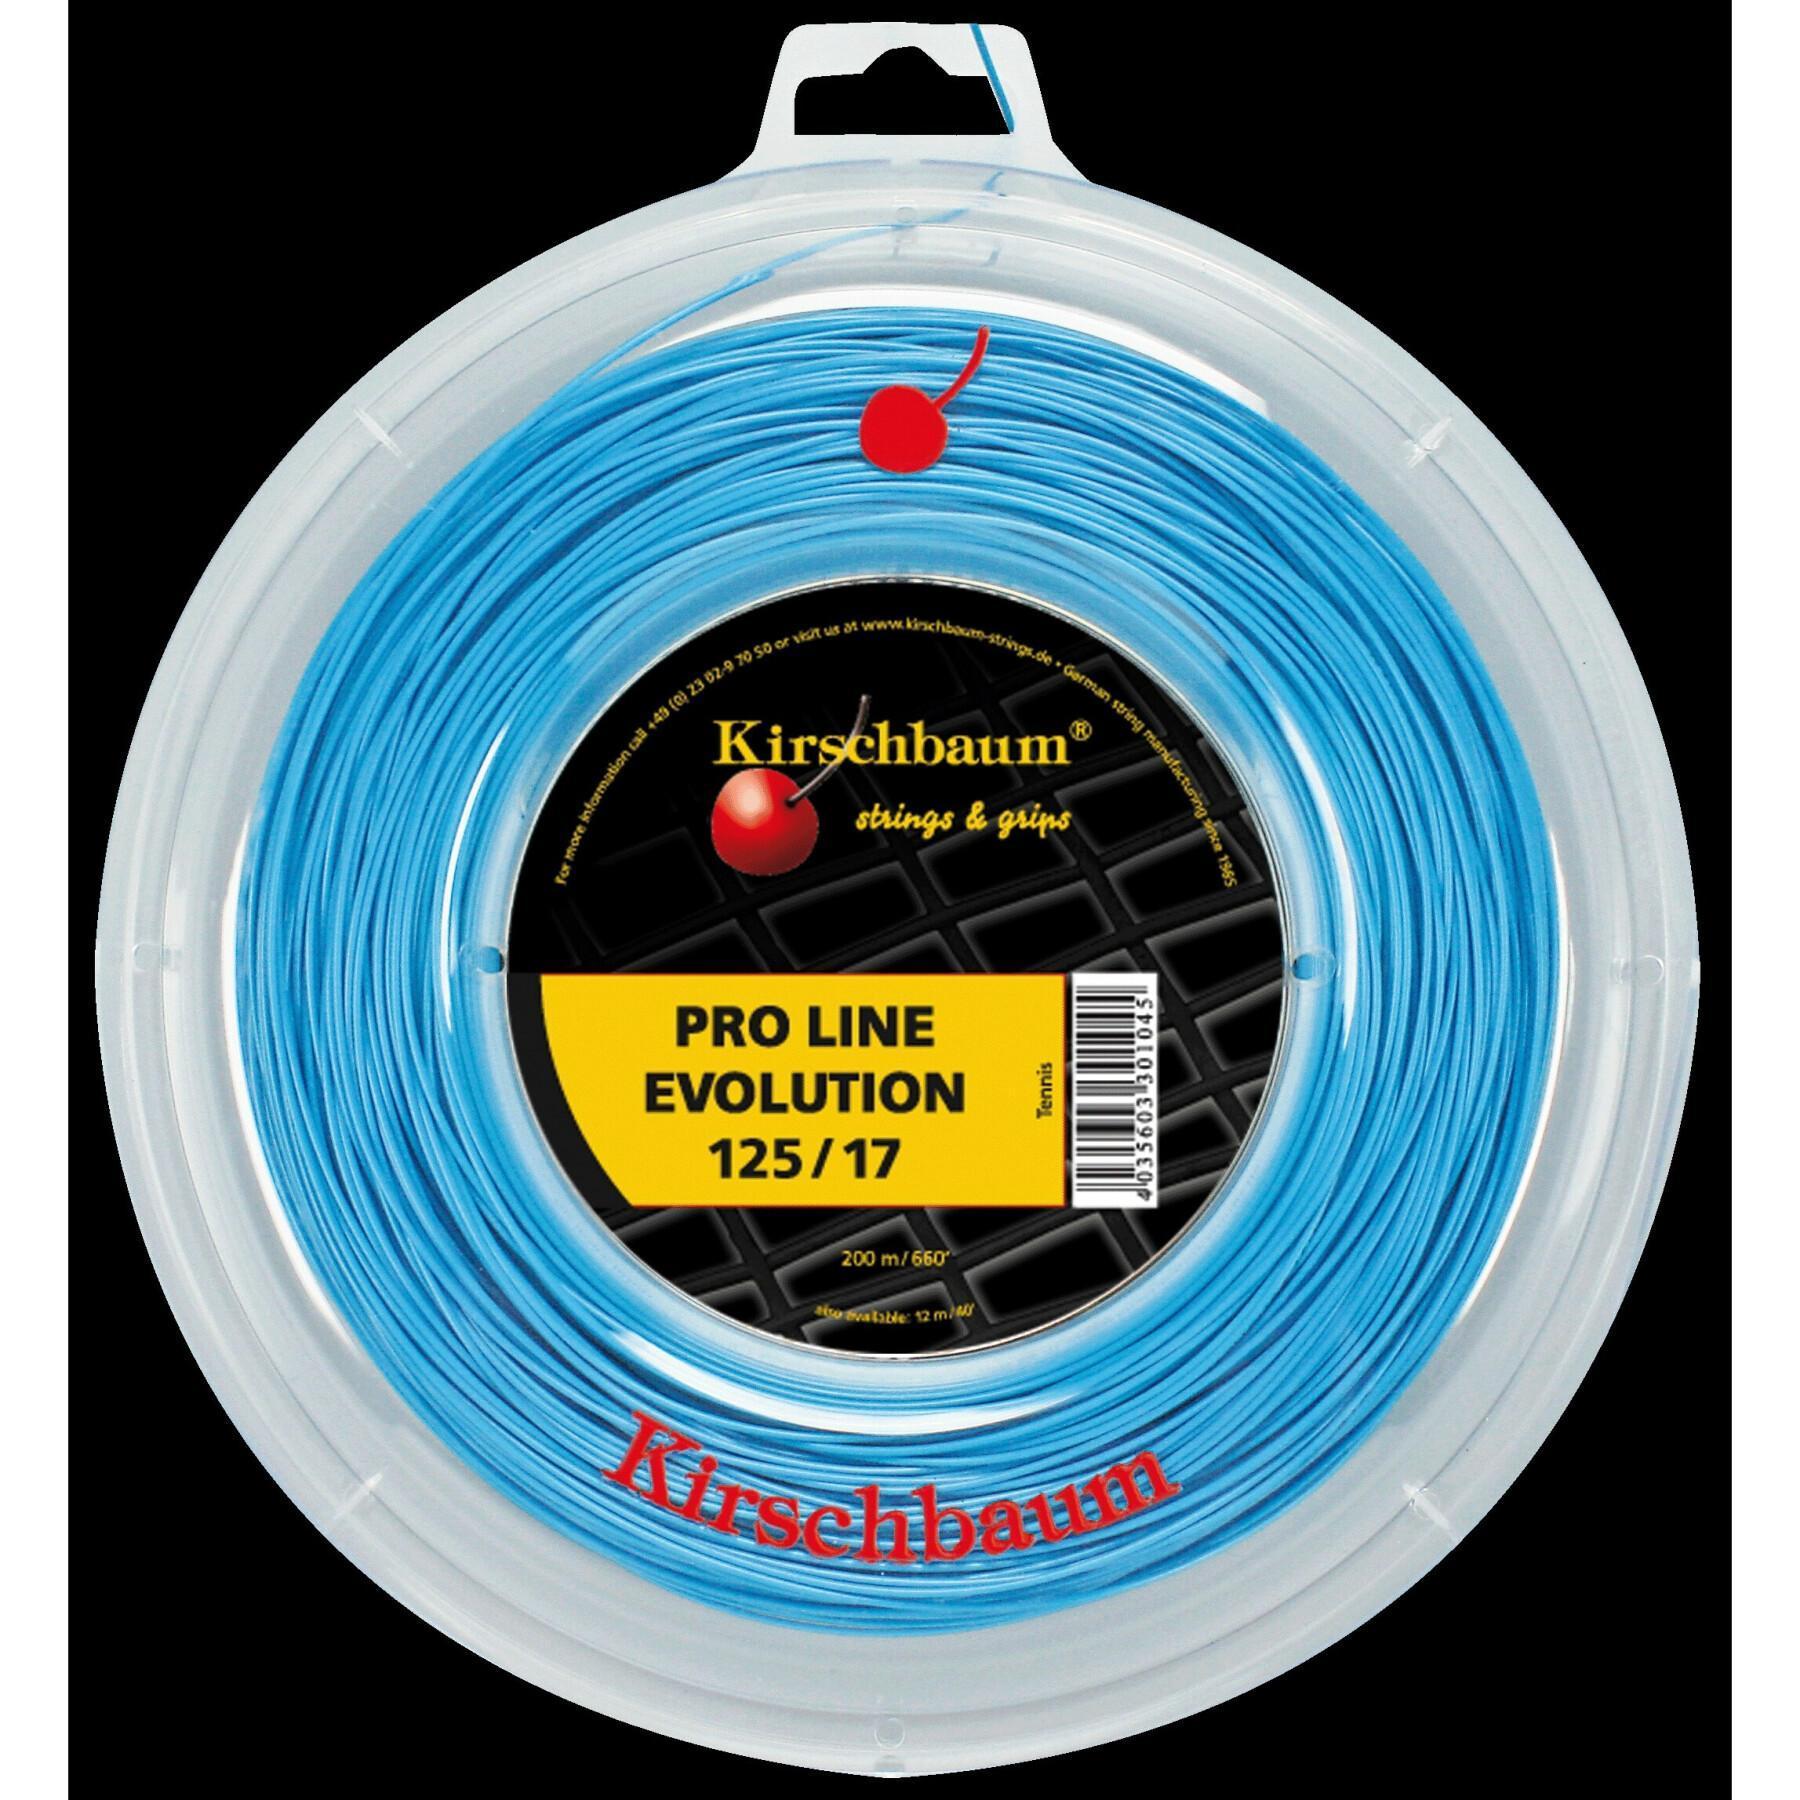 Tennis strings Kirschbaum Pro Line Evolution 200 m